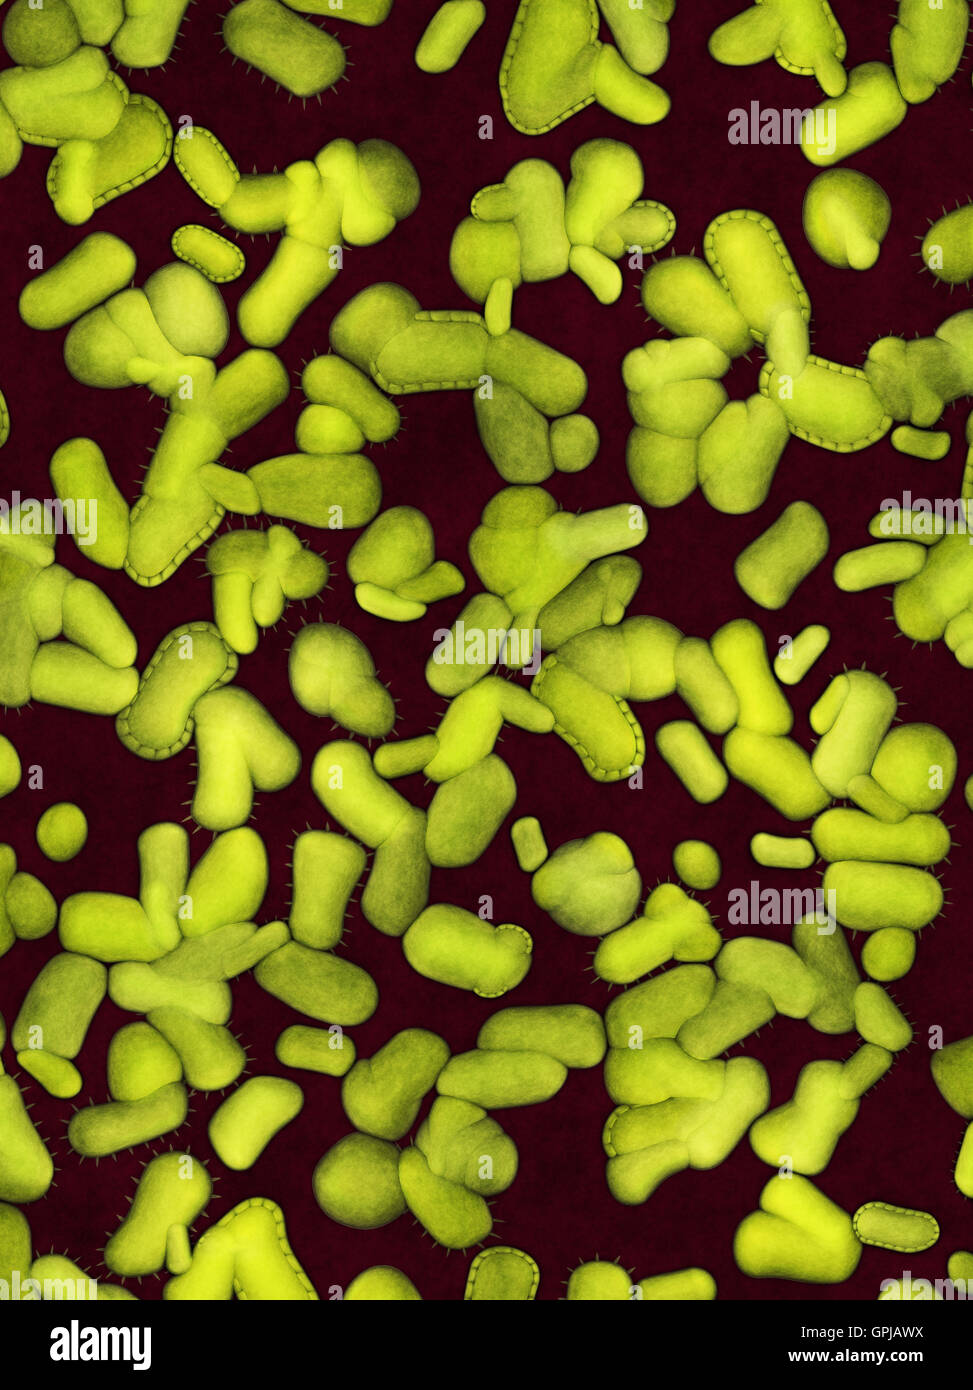 Colony of dangerous bacteria Stock Photo